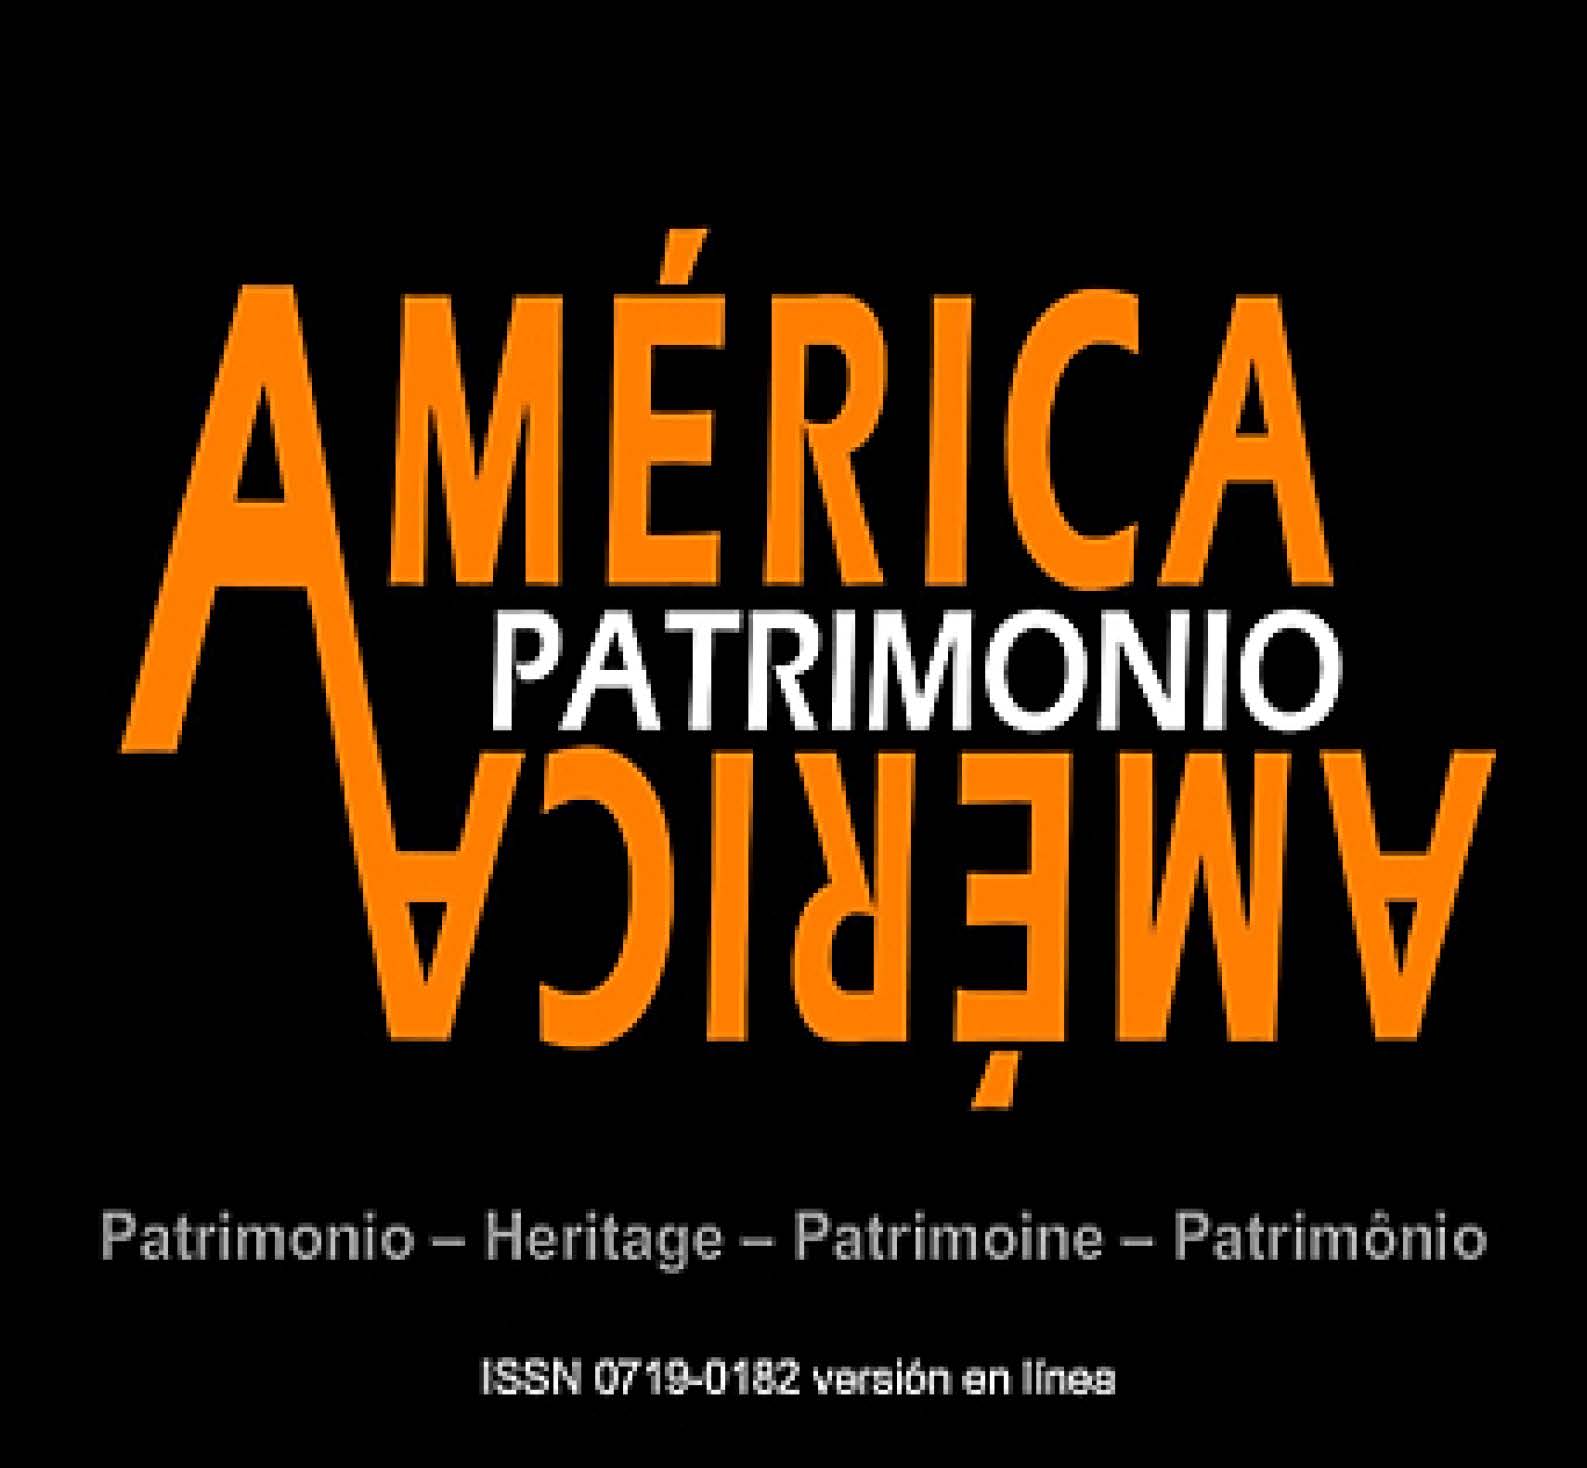 America-Patrimonio.jpg